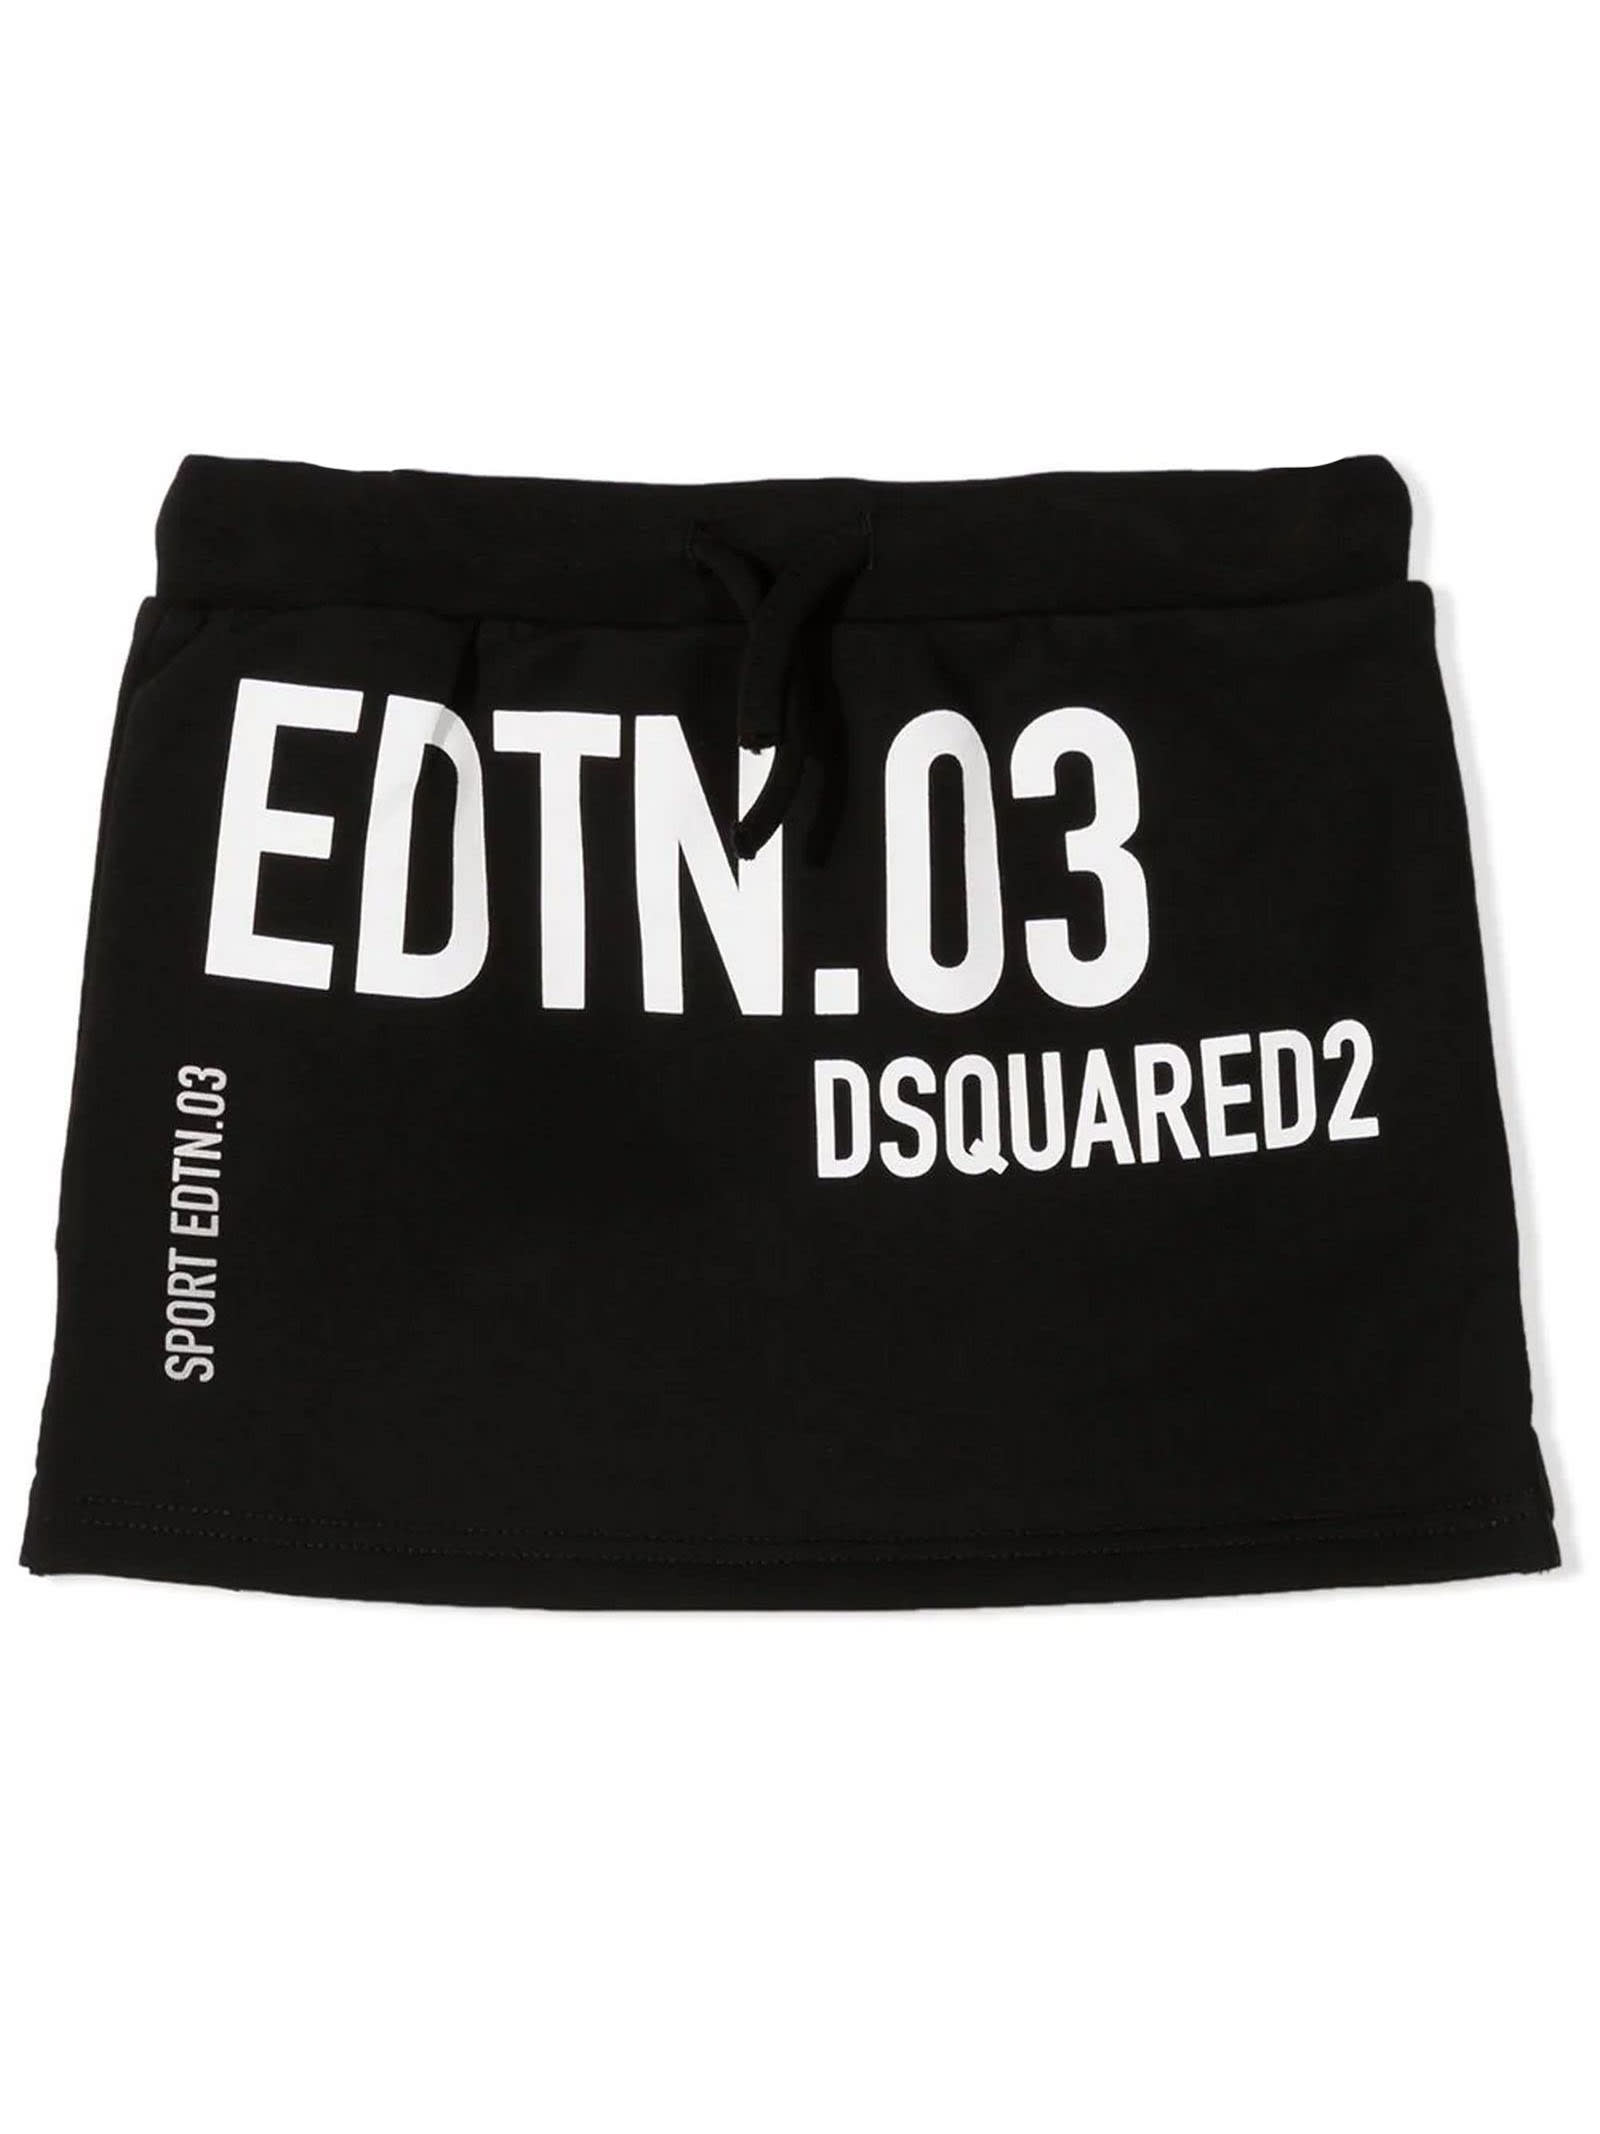 Dsquared2 Black Cotton Sport Edtn. 03 Skirt